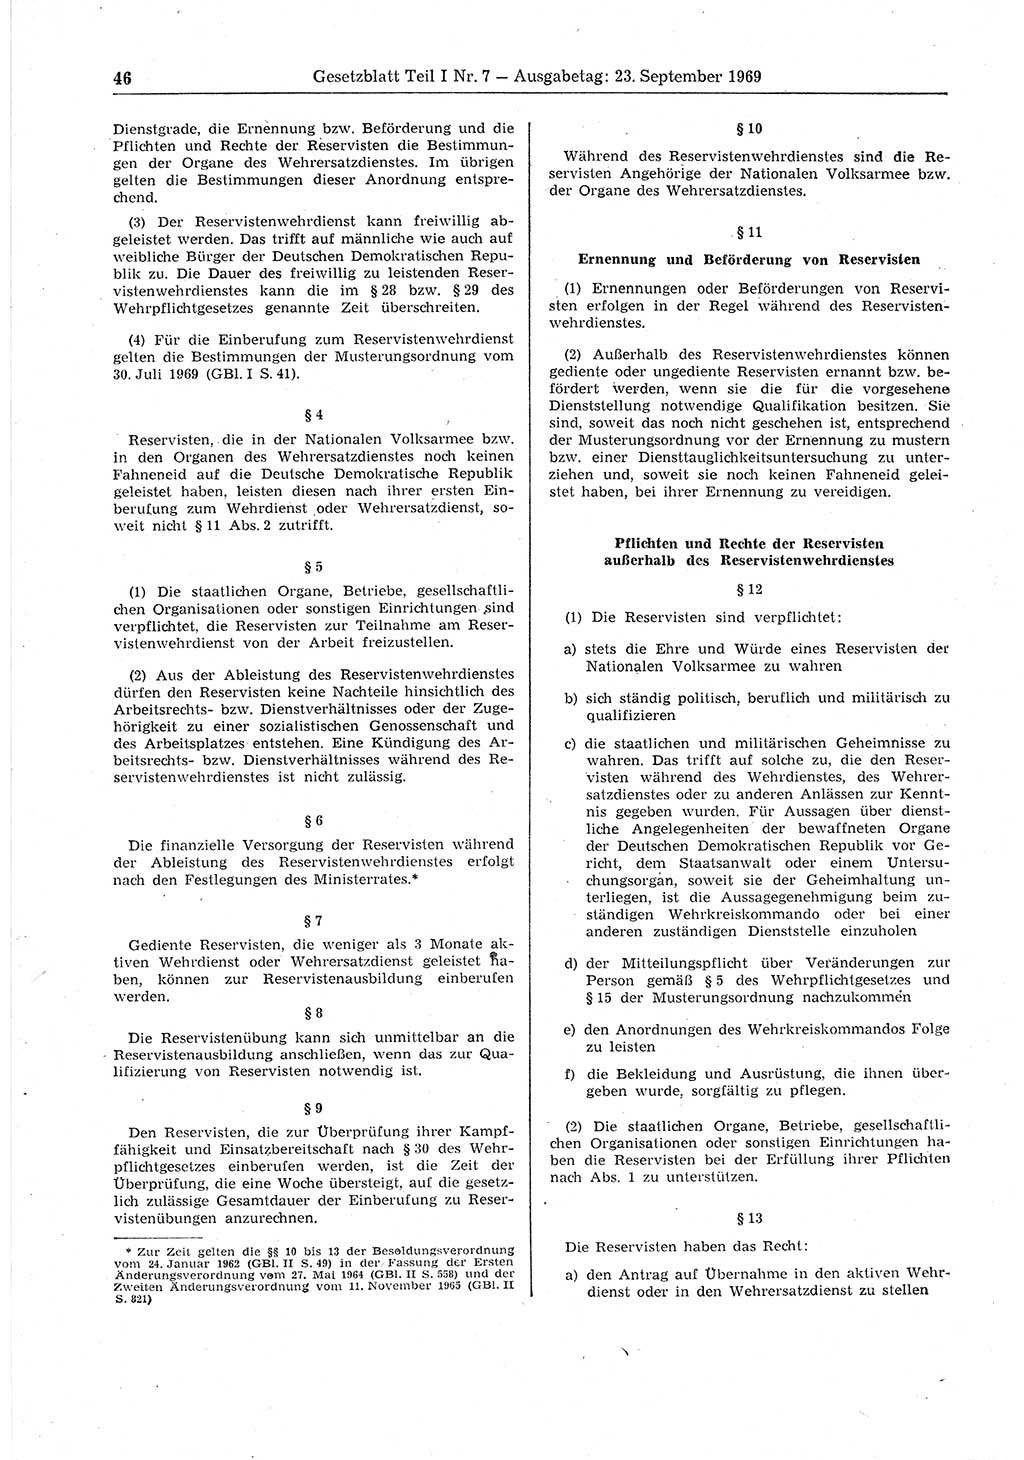 Gesetzblatt (GBl.) der Deutschen Demokratischen Republik (DDR) Teil Ⅰ 1969, Seite 46 (GBl. DDR Ⅰ 1969, S. 46)